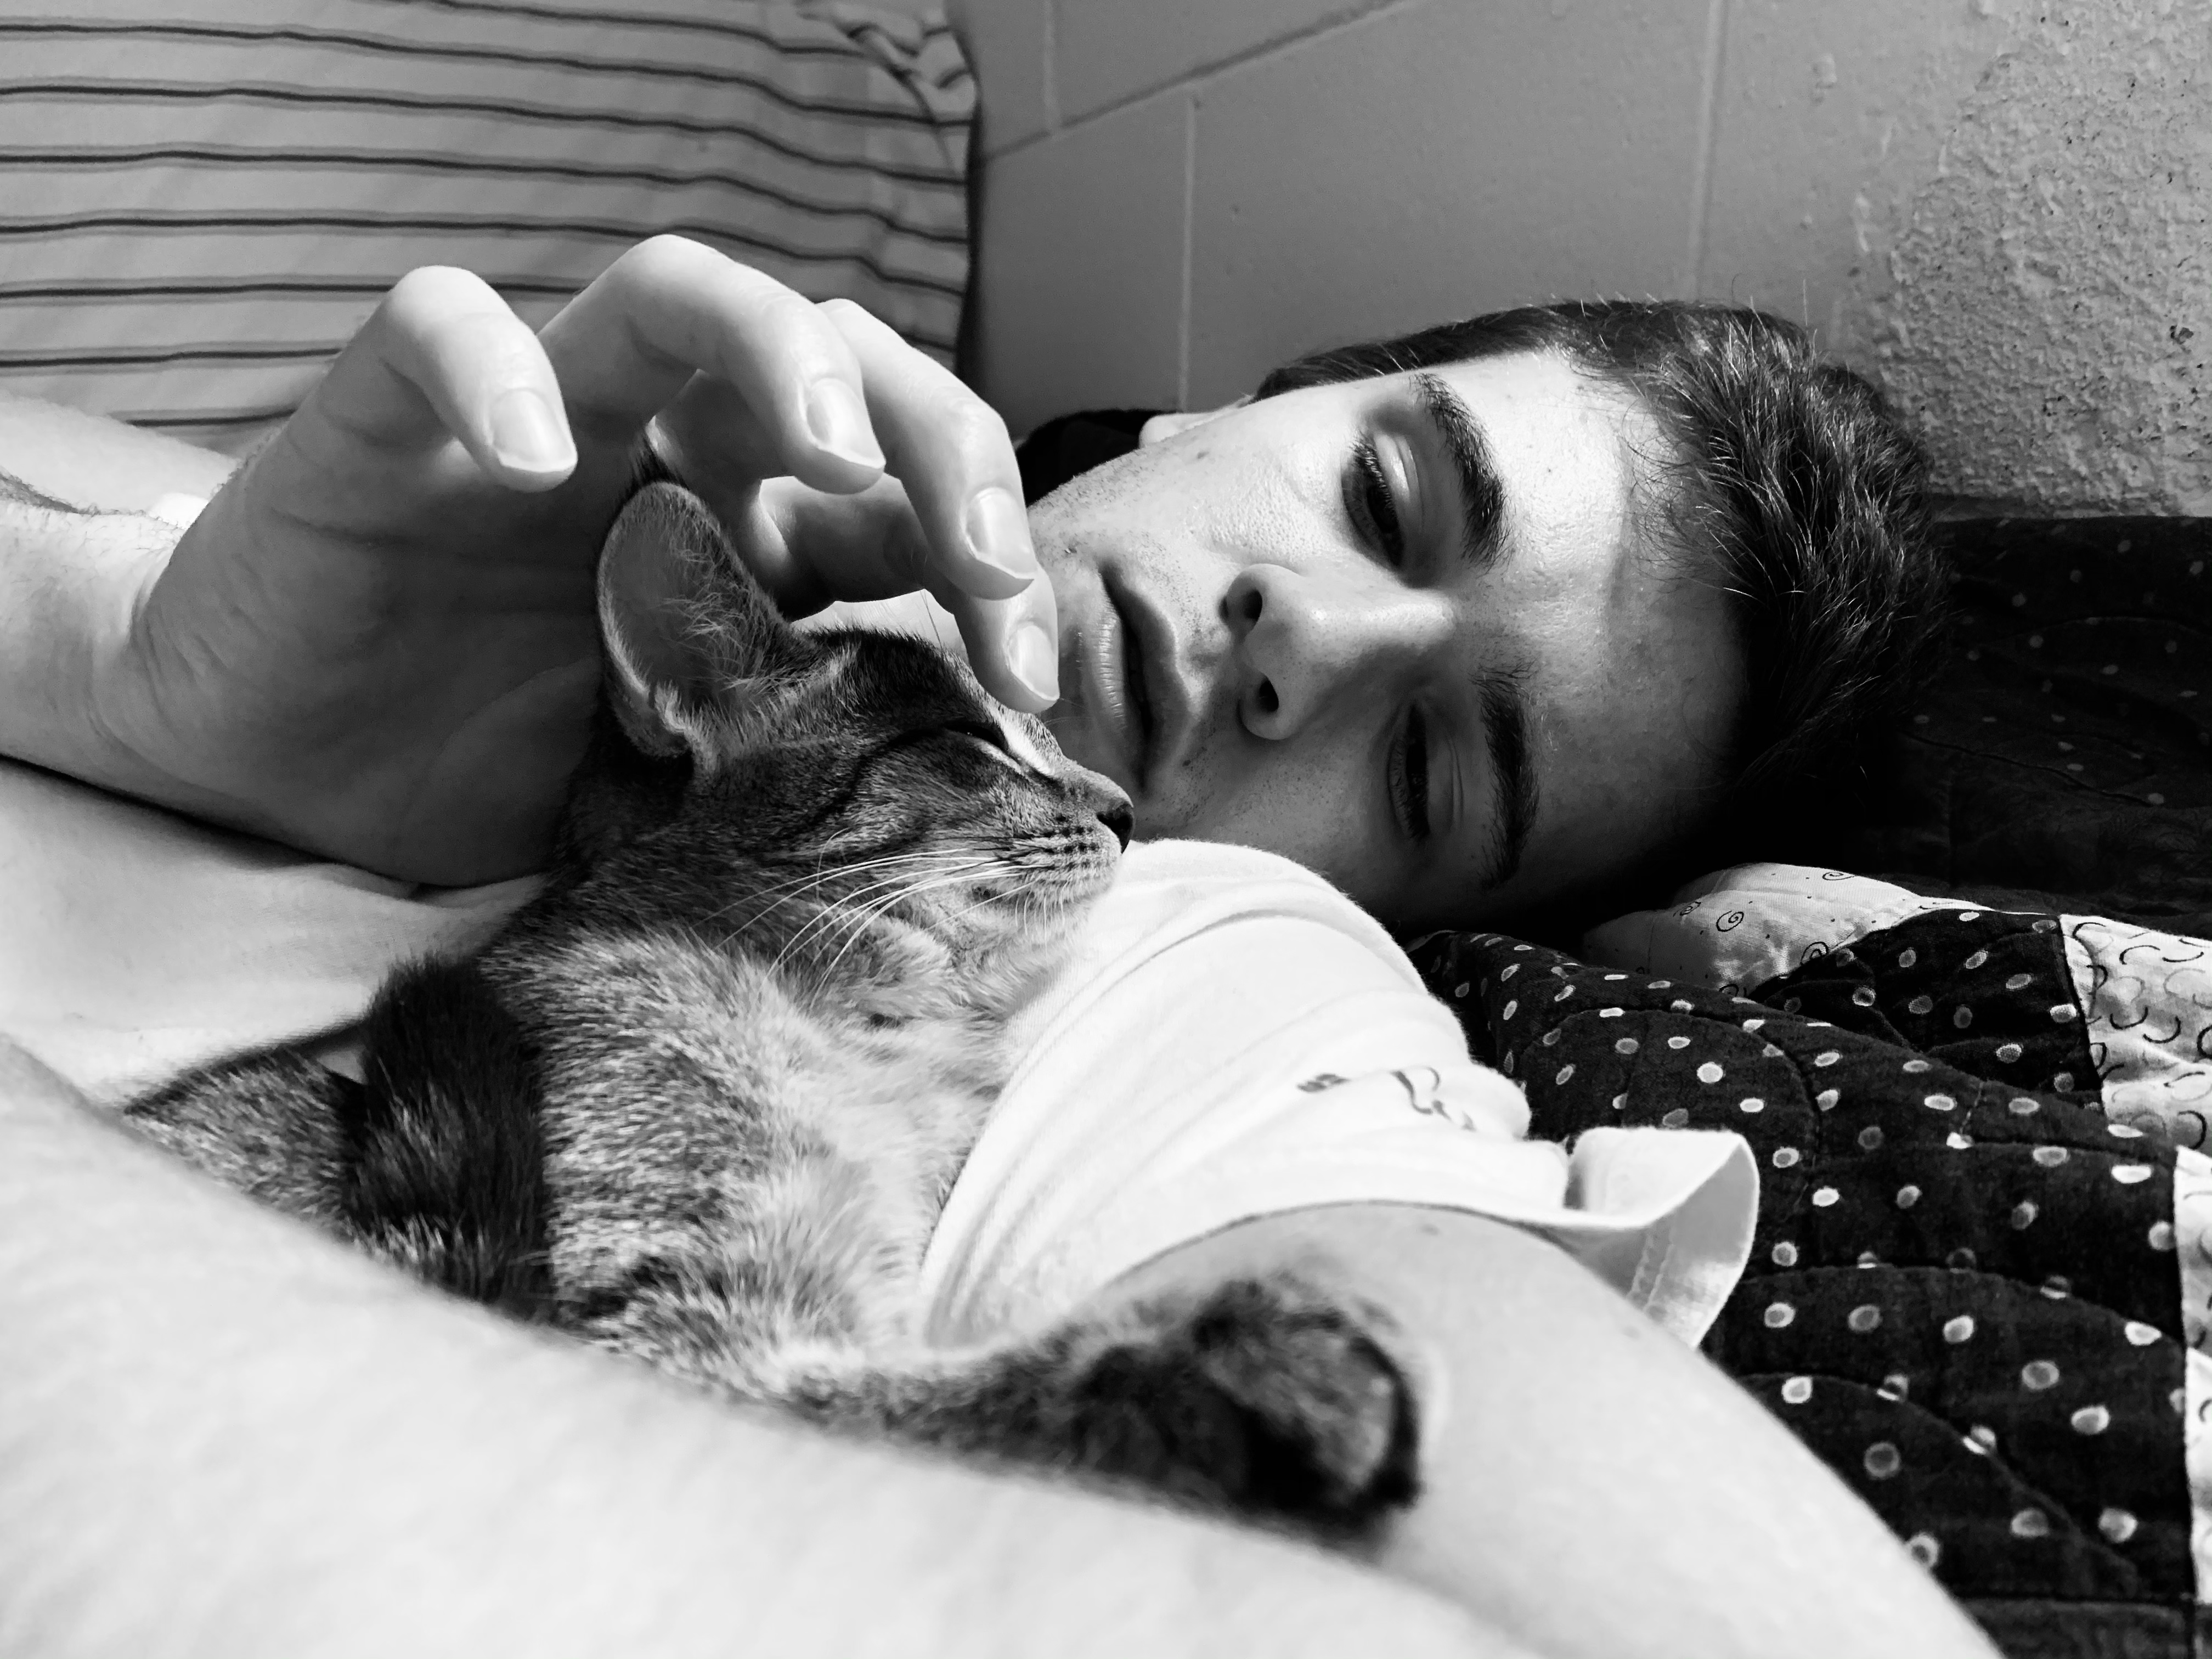 Grayson Buning cuddling his new kitten, Chani.